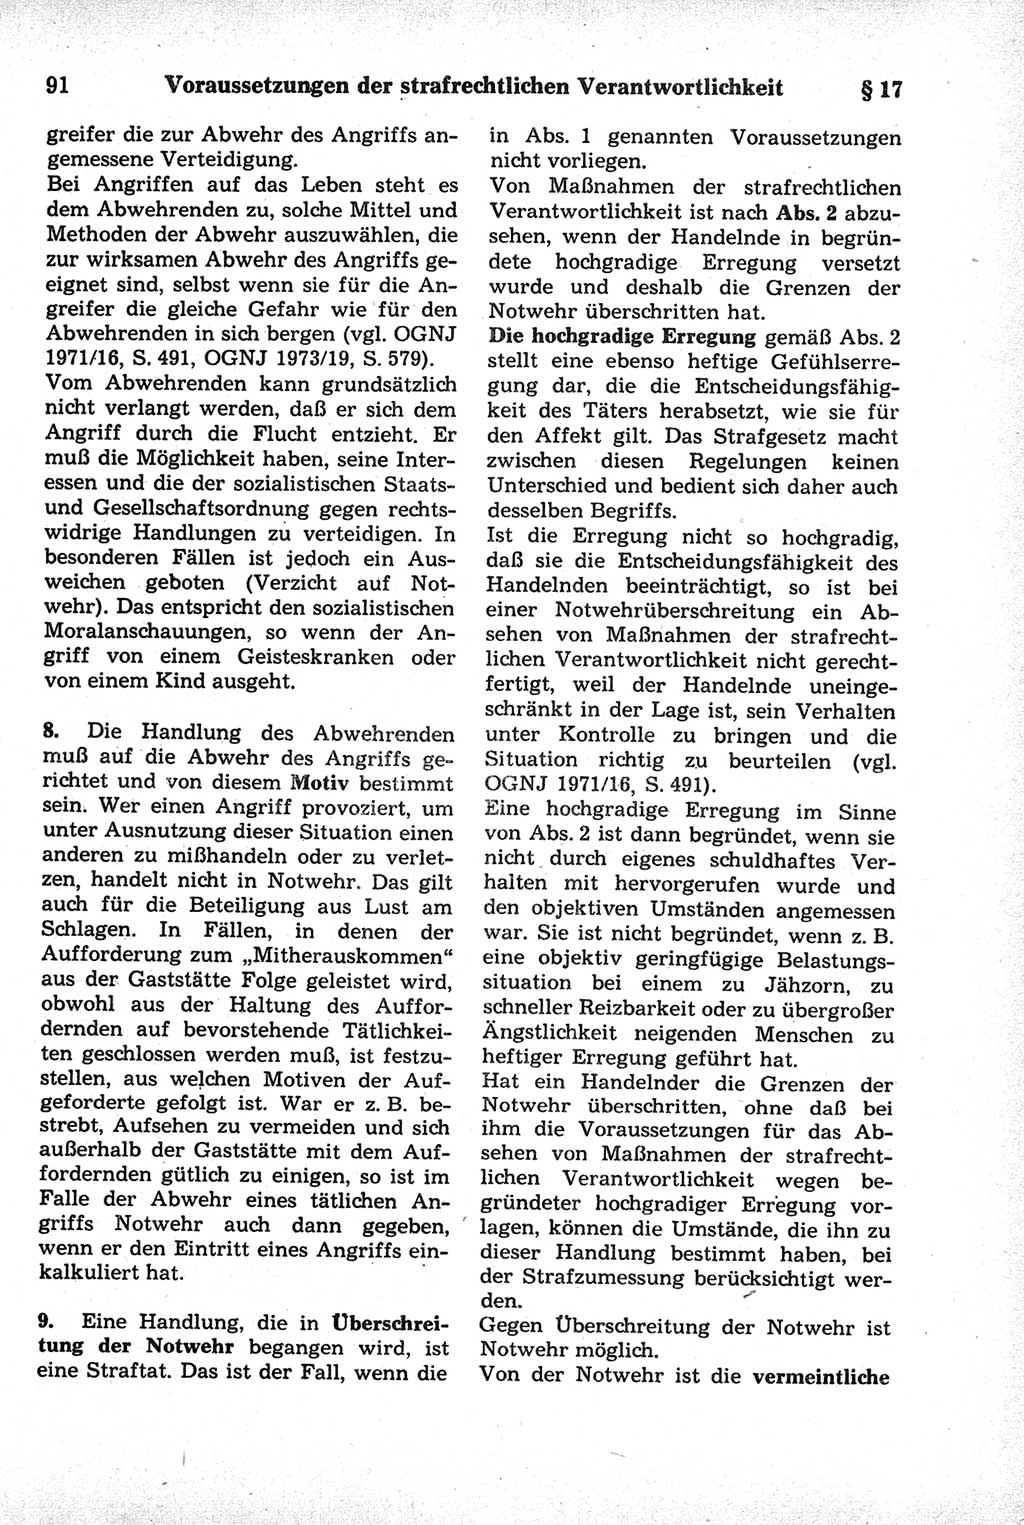 Strafrecht der Deutschen Demokratischen Republik (DDR), Kommentar zum Strafgesetzbuch (StGB) 1981, Seite 91 (Strafr. DDR Komm. StGB 1981, S. 91)